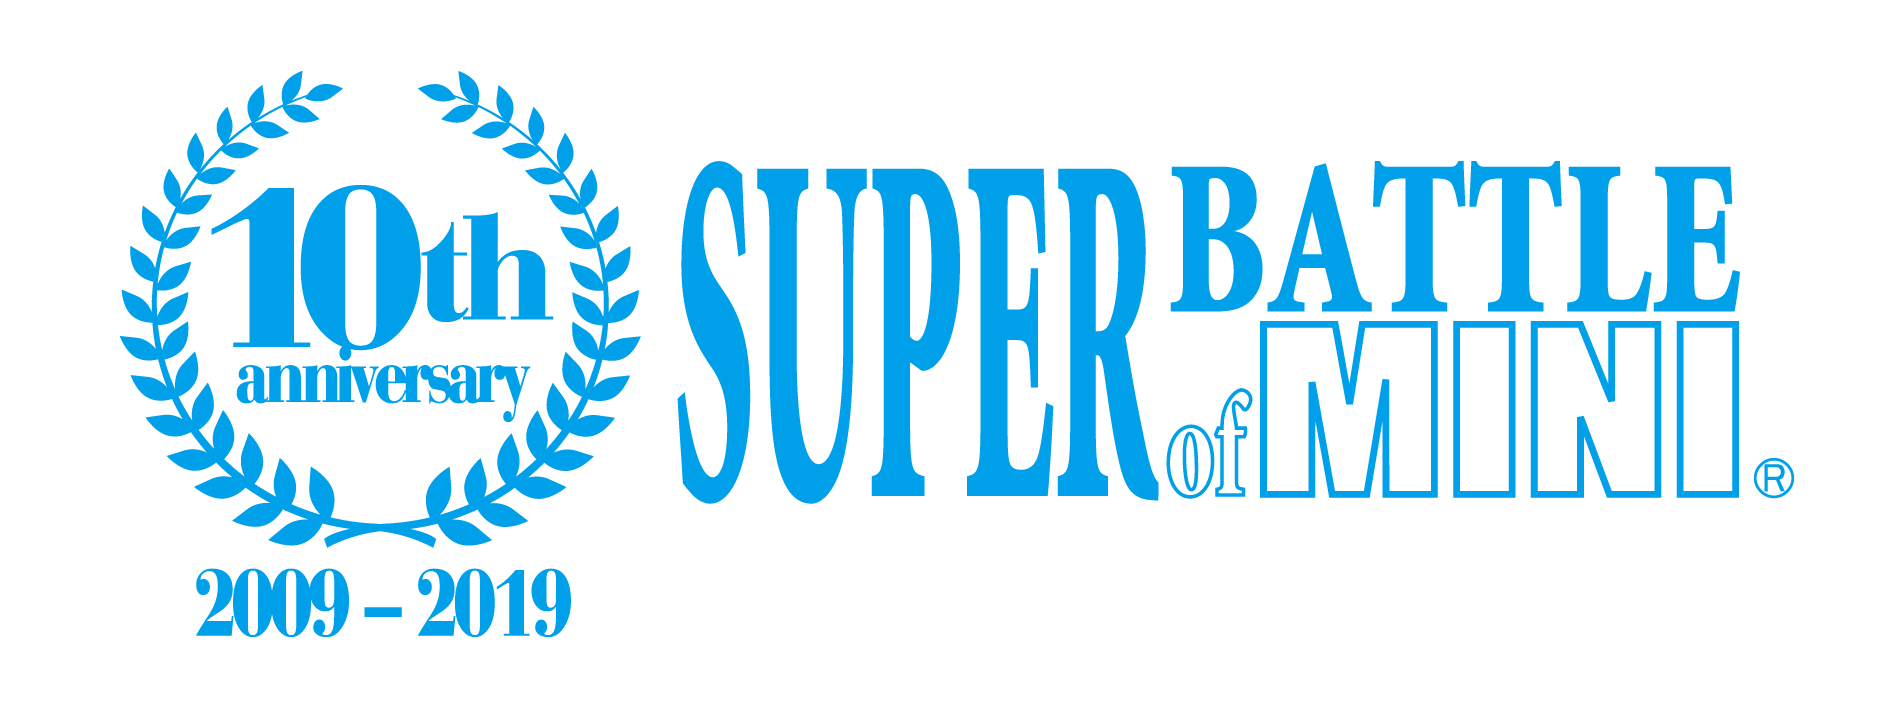 【更新】SUPER BATTLE of MINI 第 4 戦 (最終戦)  エントリーリスト  